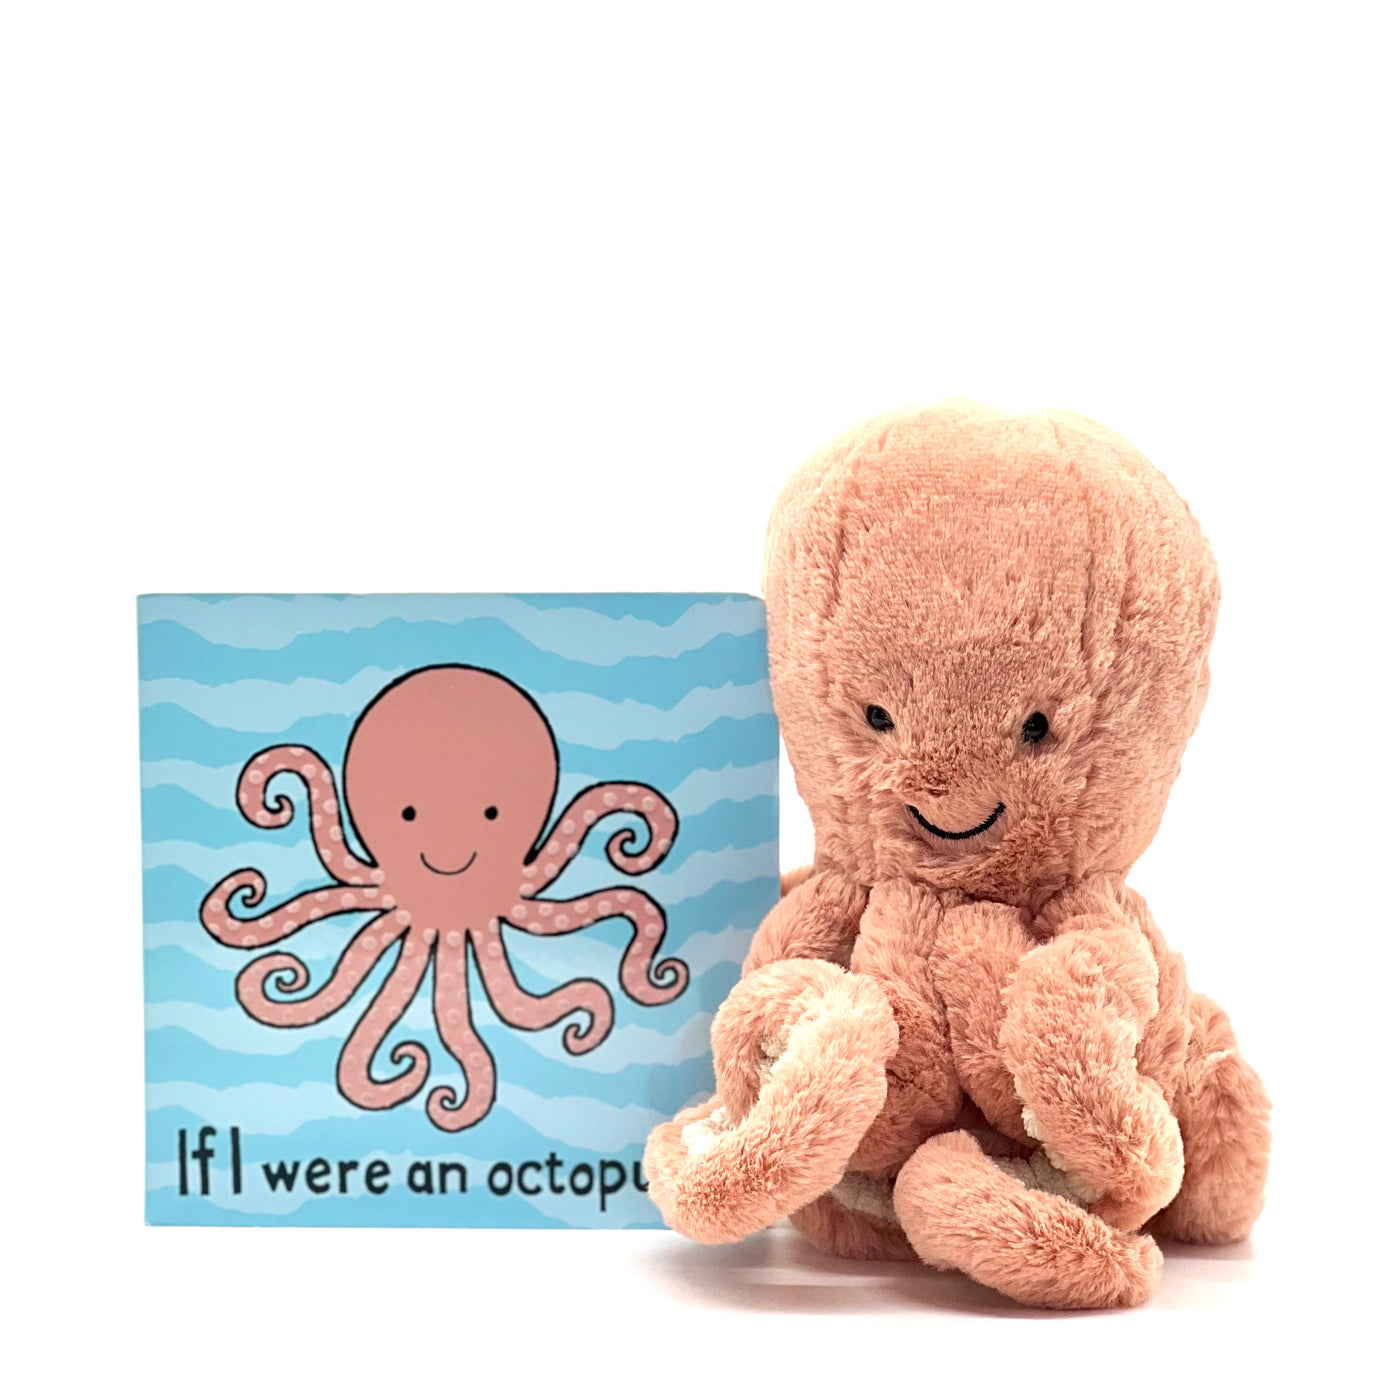 if i were an octopus book set